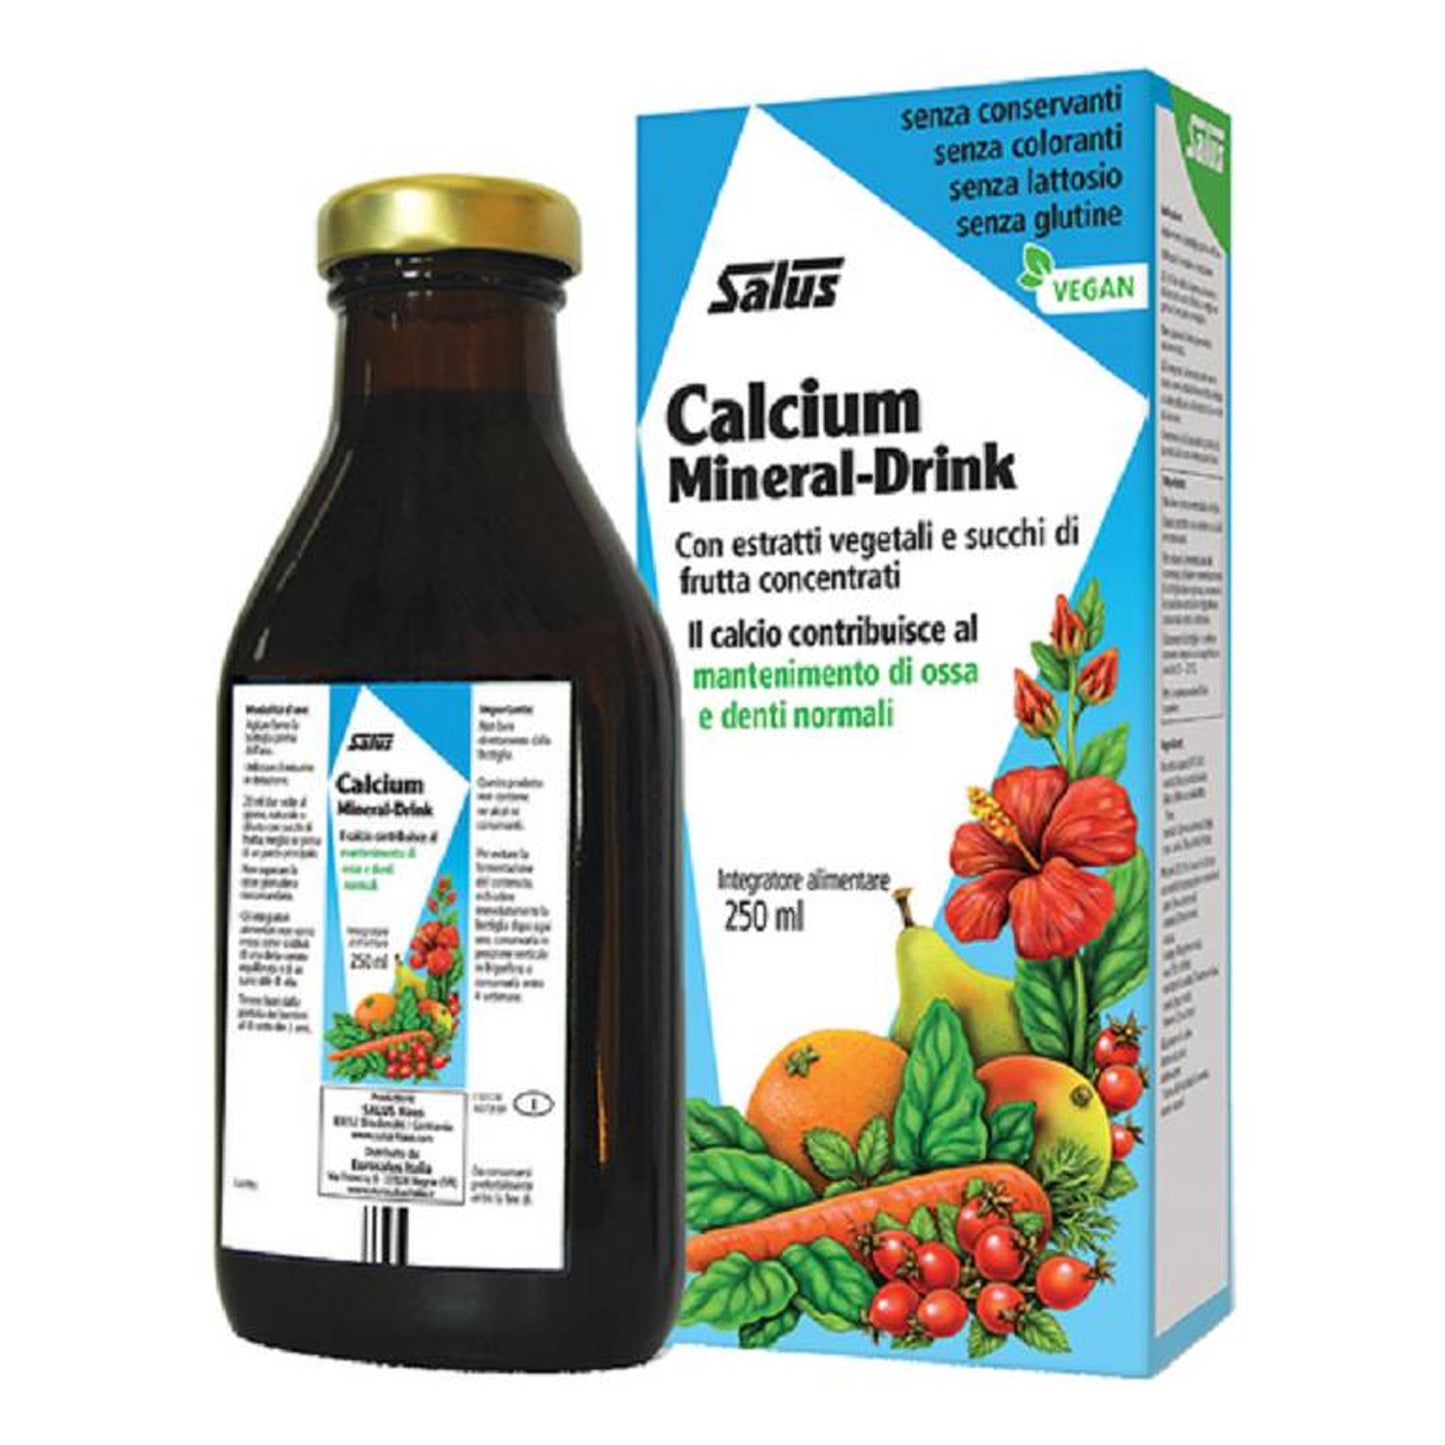 Integratore Calcium Mineral-Drink